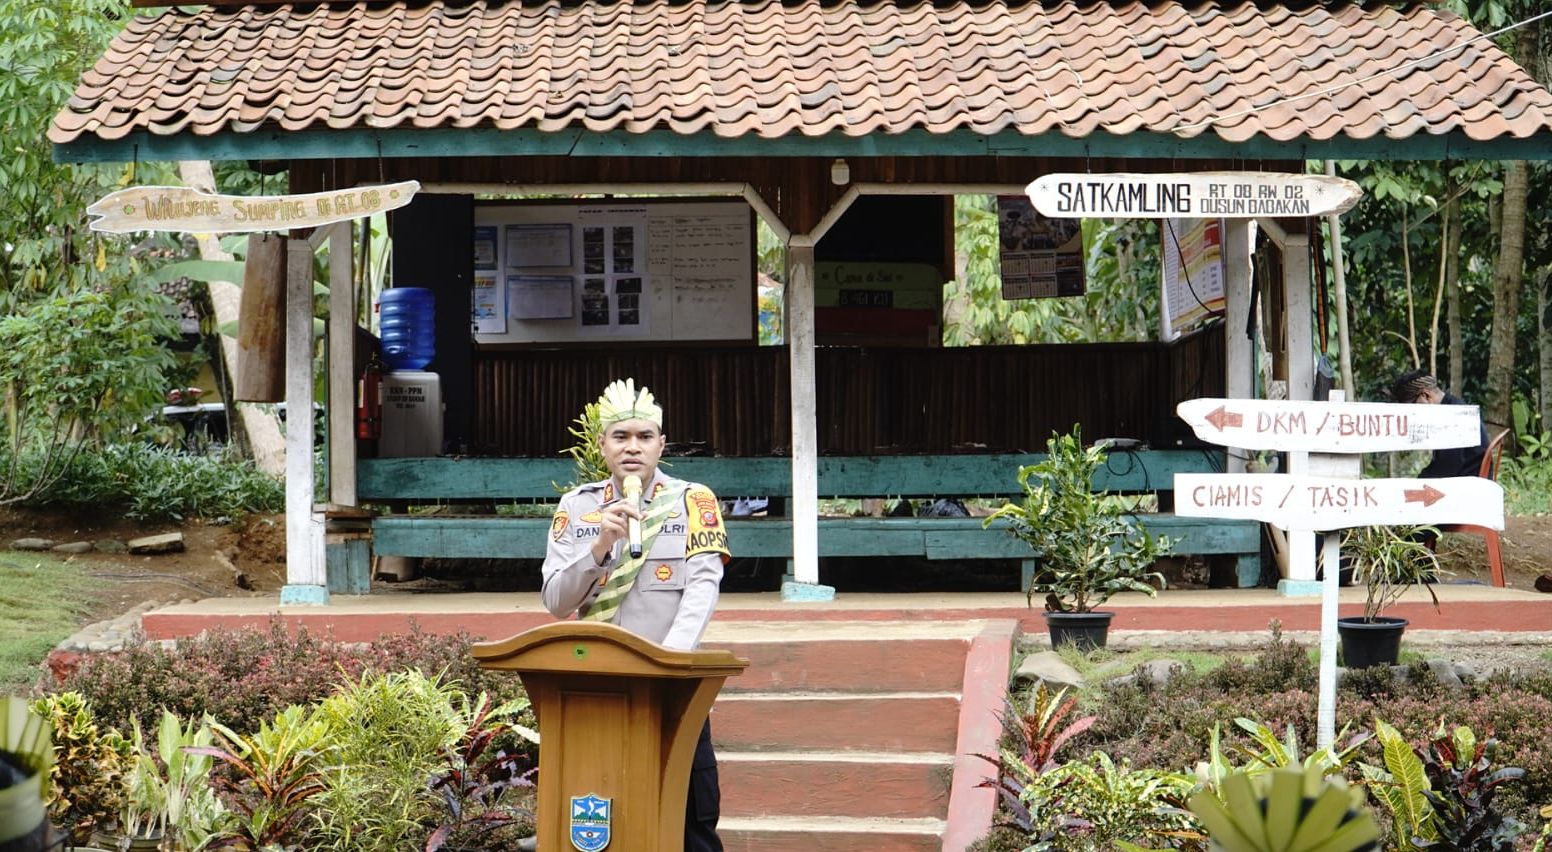 Kapolres Banjar, AKBP Danny Yulianto saat memberikan sambutan dekat Poskamling di Dusun Babakan, RT 08 RW 02, Desa Cibeureum, Kecamatan / Kota Banjar.